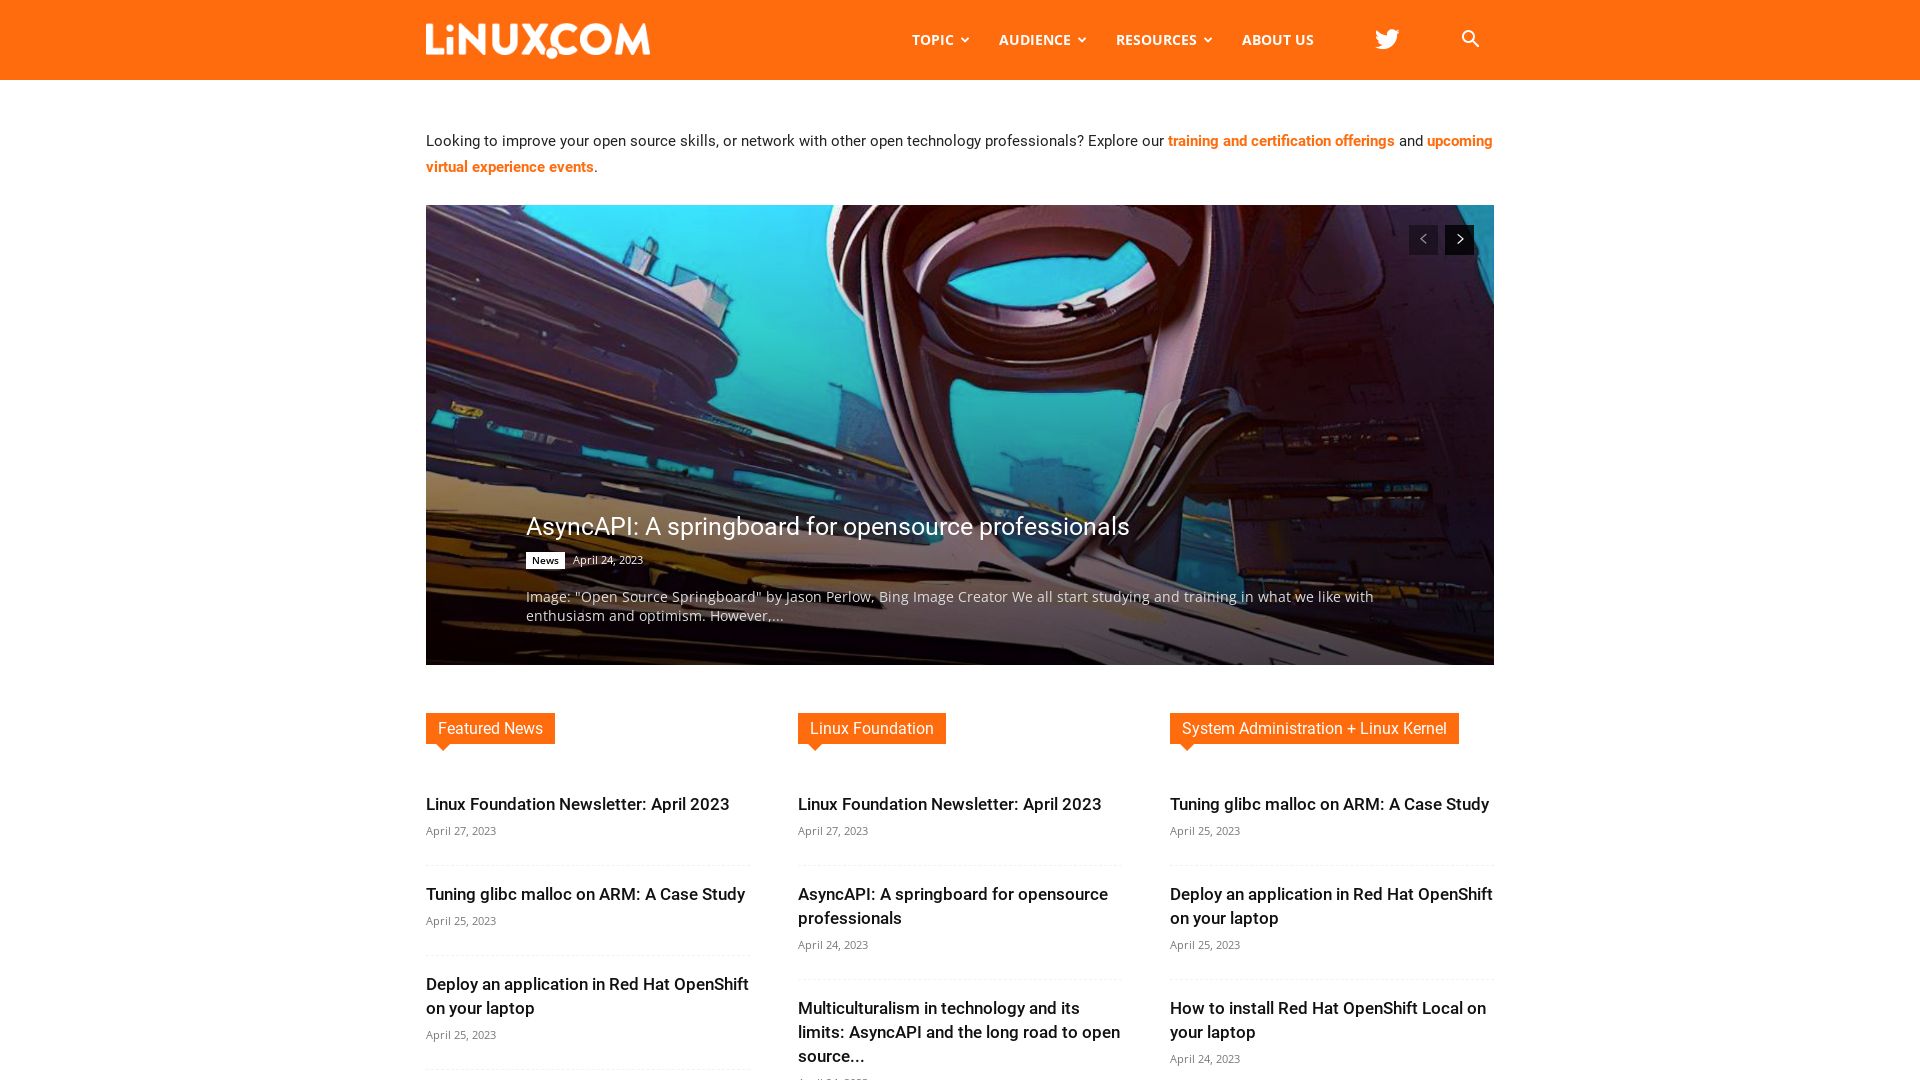 Estado web linux.com está   ONLINE